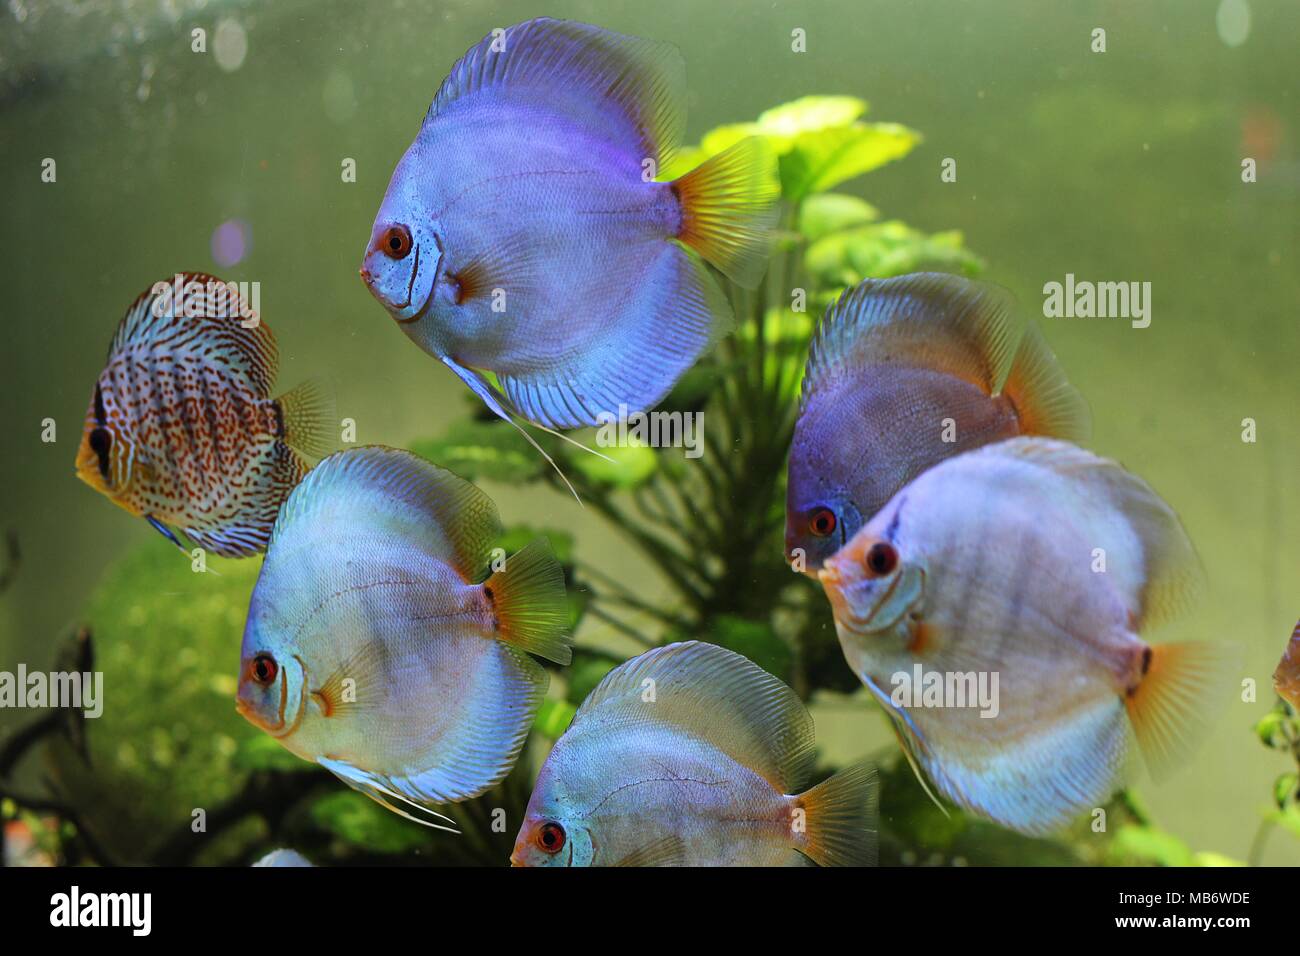 Blue discus and colorful discus fish (Symphysodon aequifasciatus) in aquarium Stock Photo